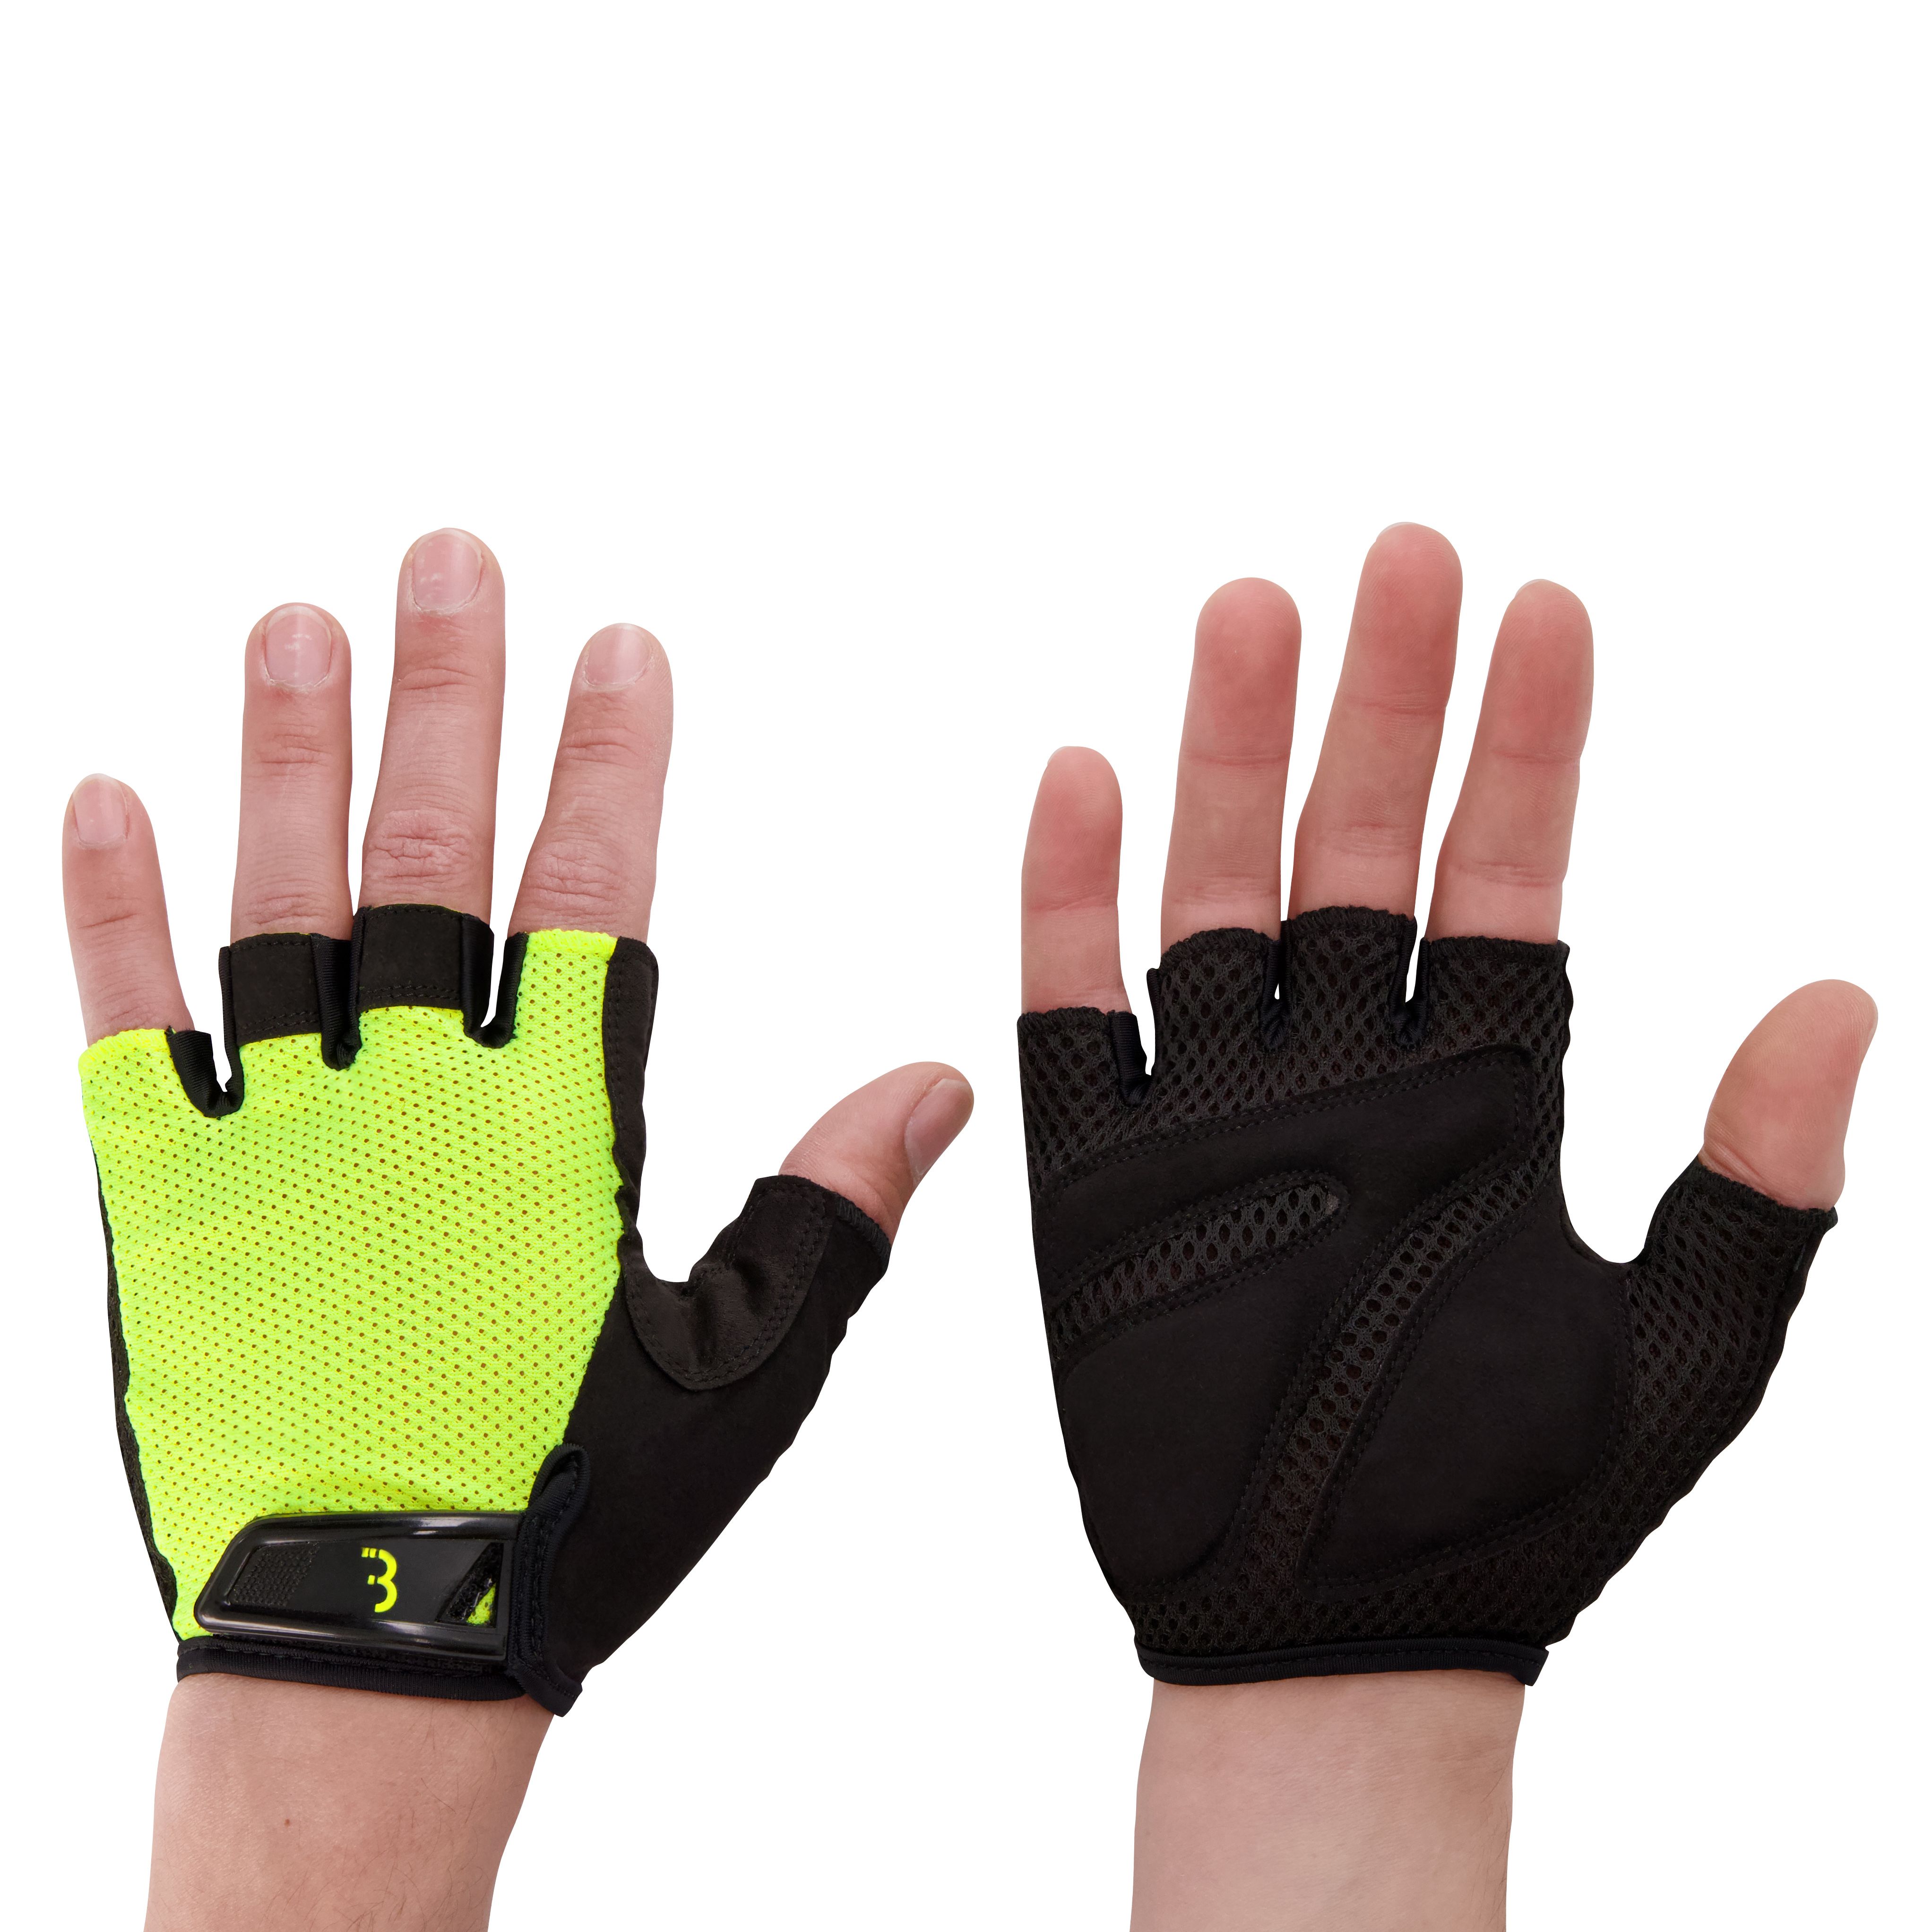 CoolDown gloves